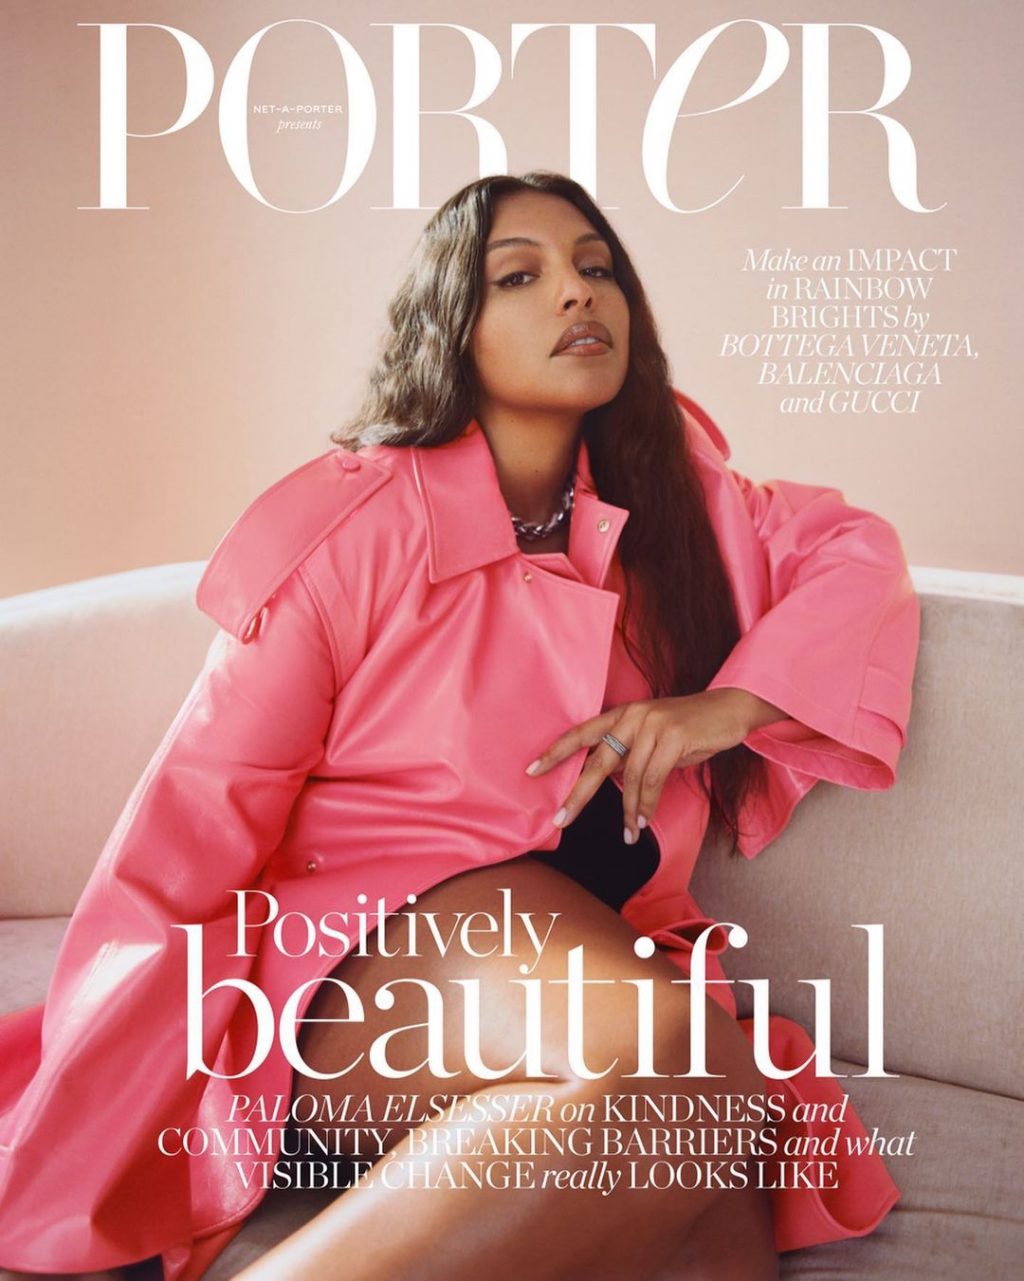 Nhan sắc ấn tượng và quyến rũ của Paloma Elsesser trên bìa tạp chí Porter